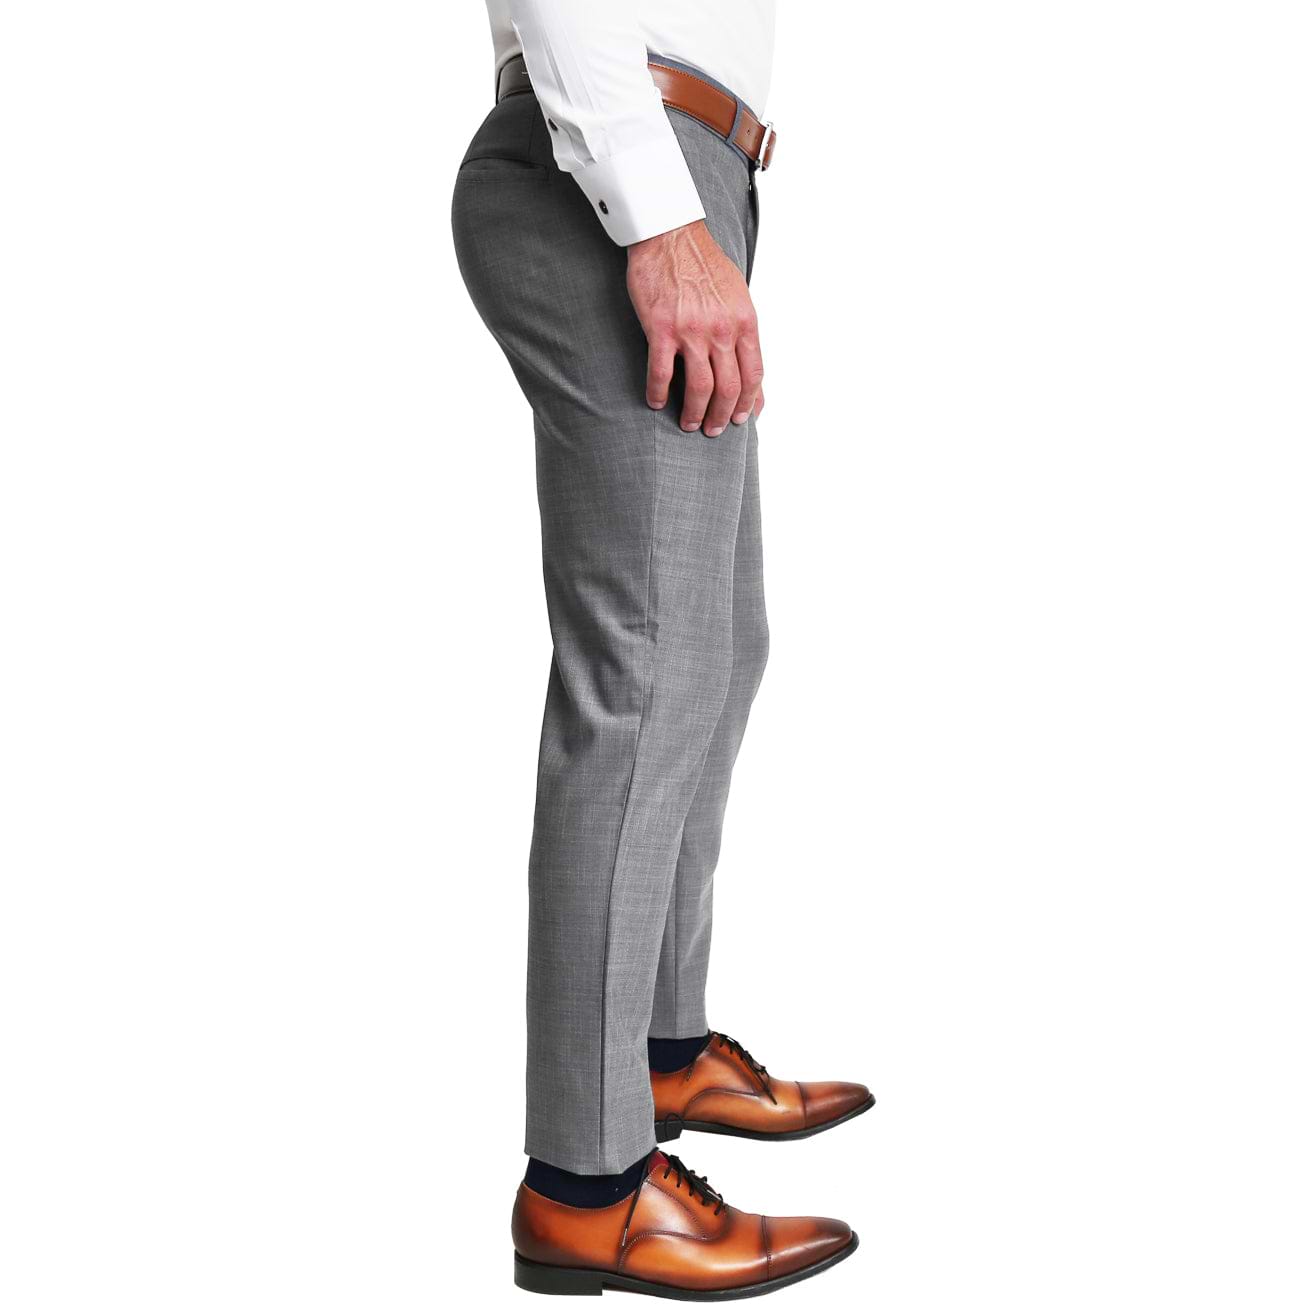 suit trousers - Man